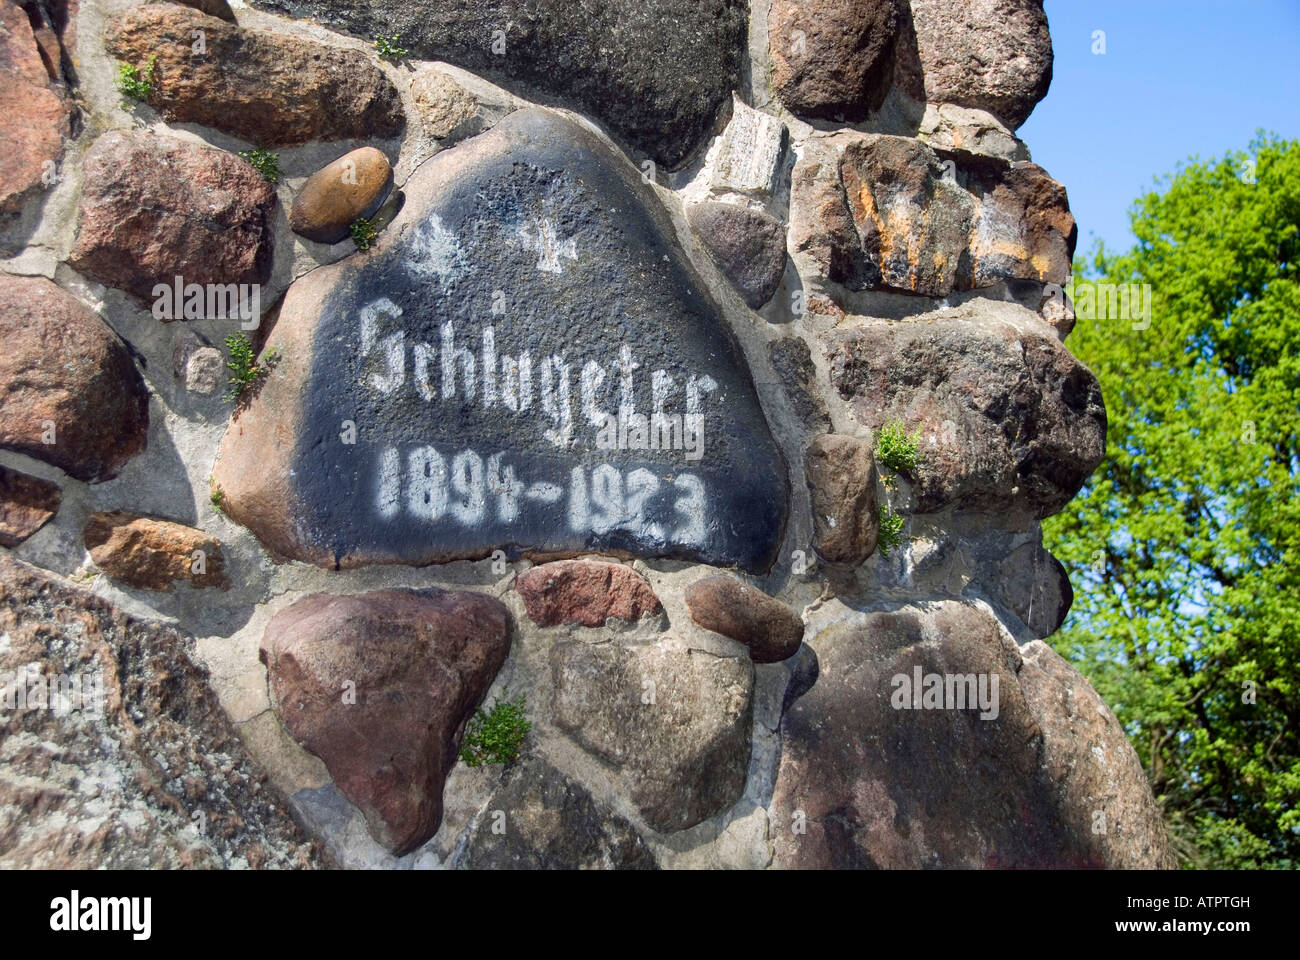 Schlageter monument / Peine Stock Photo